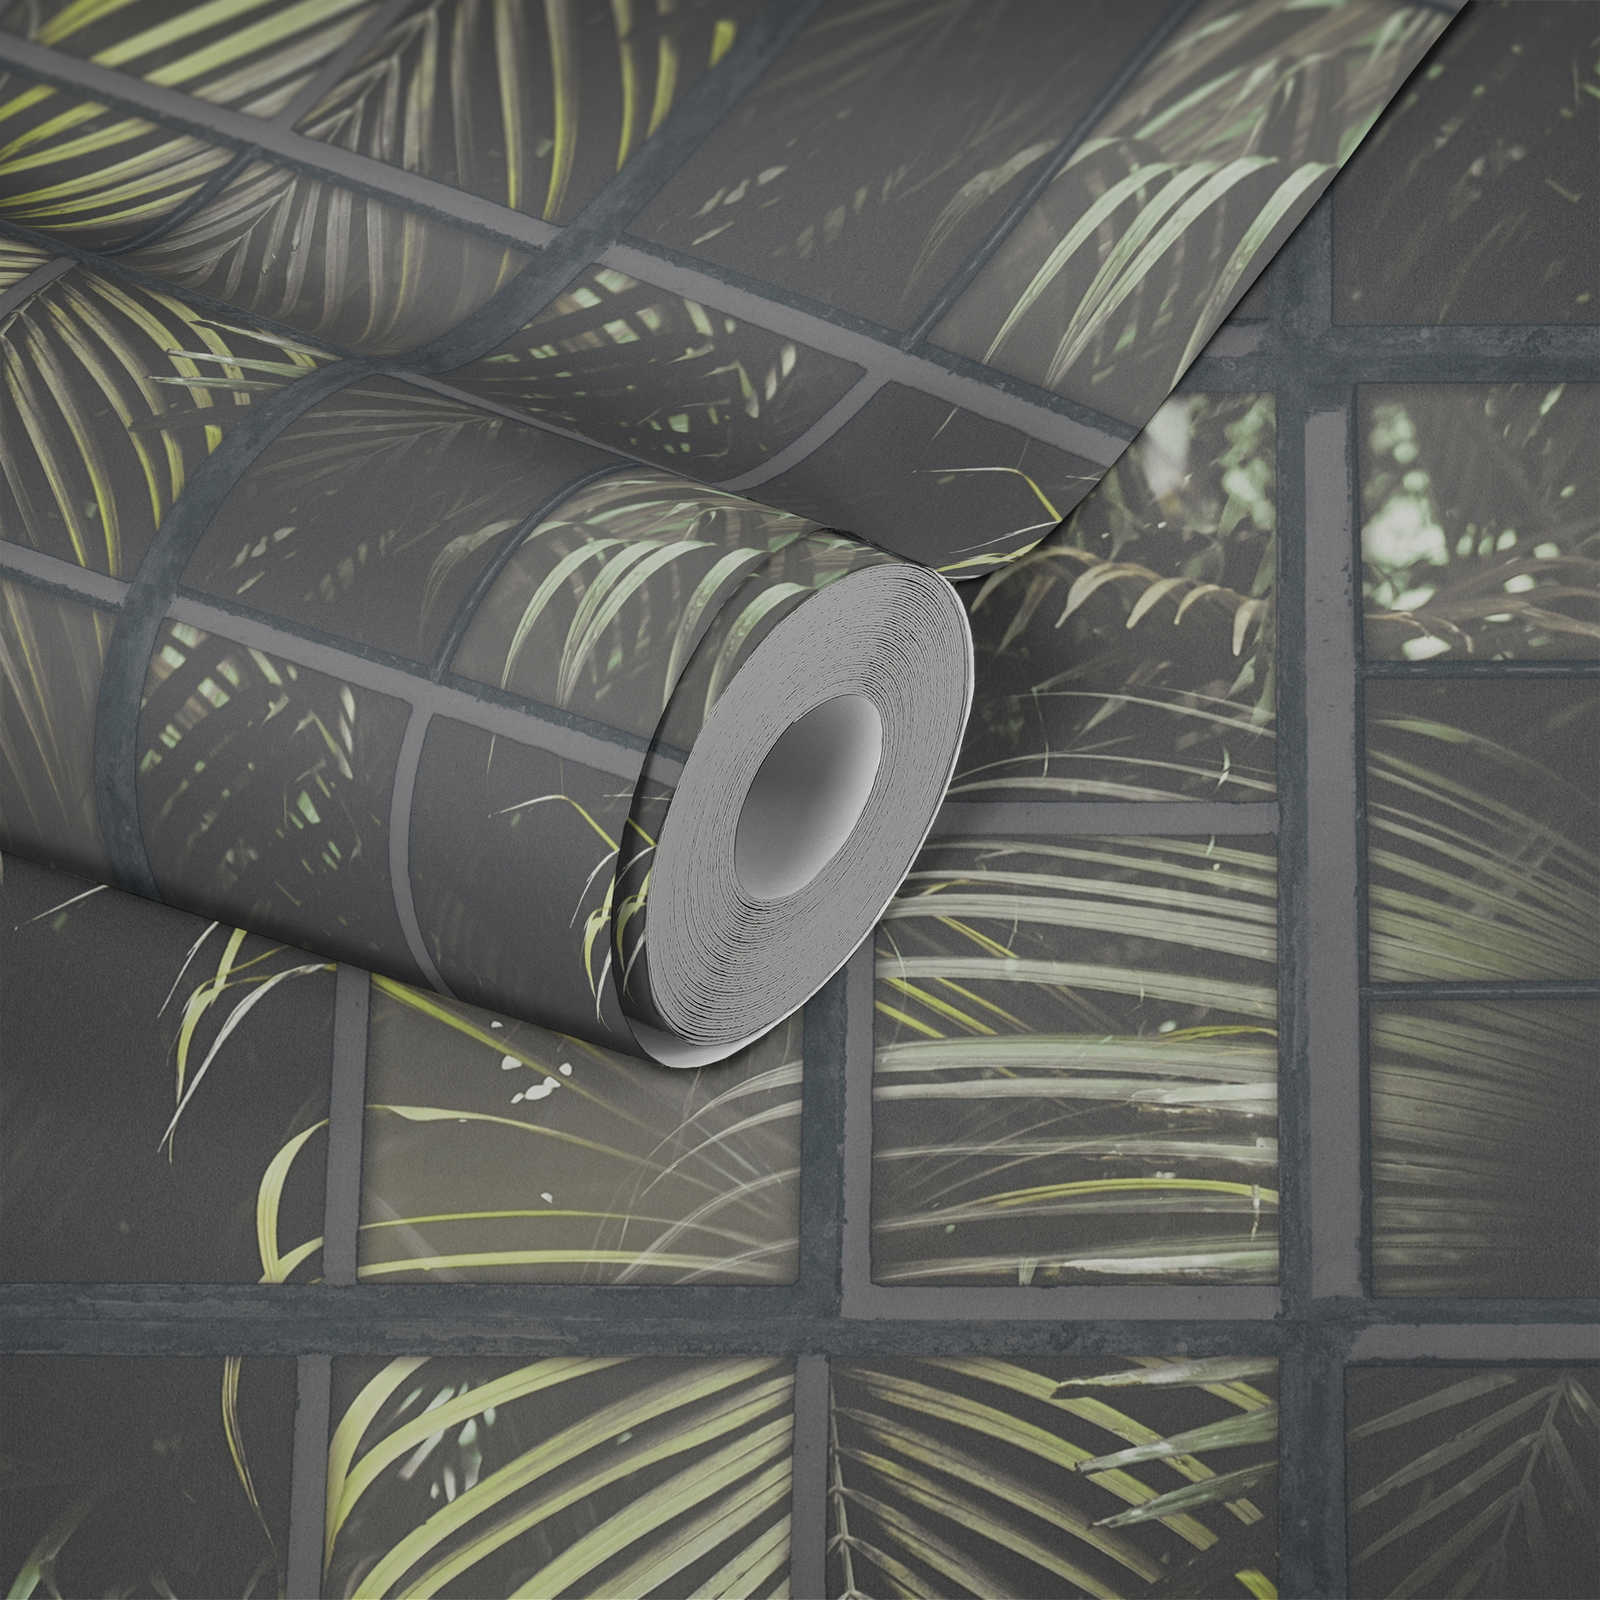             Wallpaper windows jungle view, 3D effect - grey, green, black
        